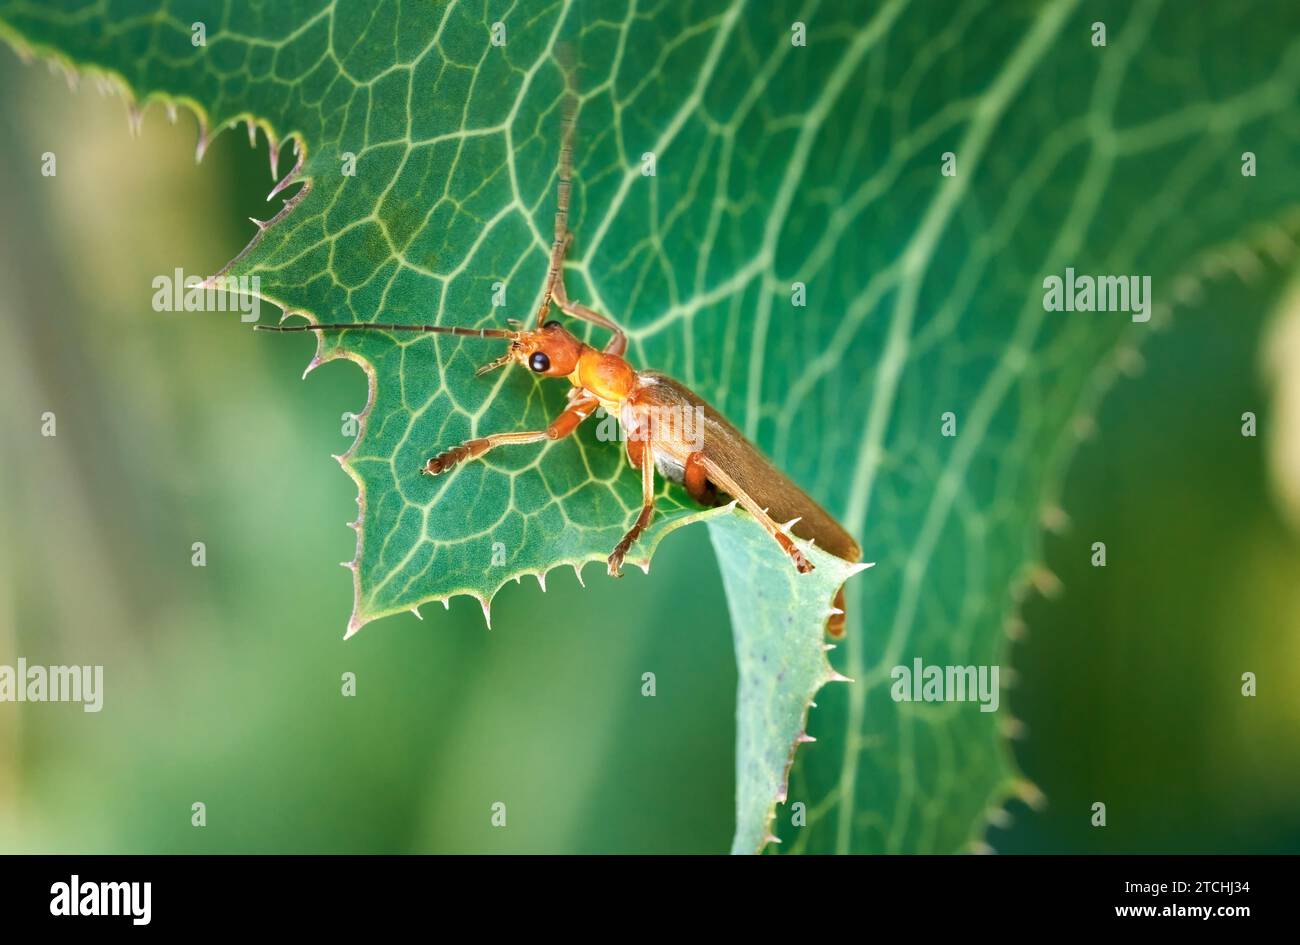 Cantharis rufa Käfer auf einem grünen Blatt mit hellen Blattadern Stockfoto